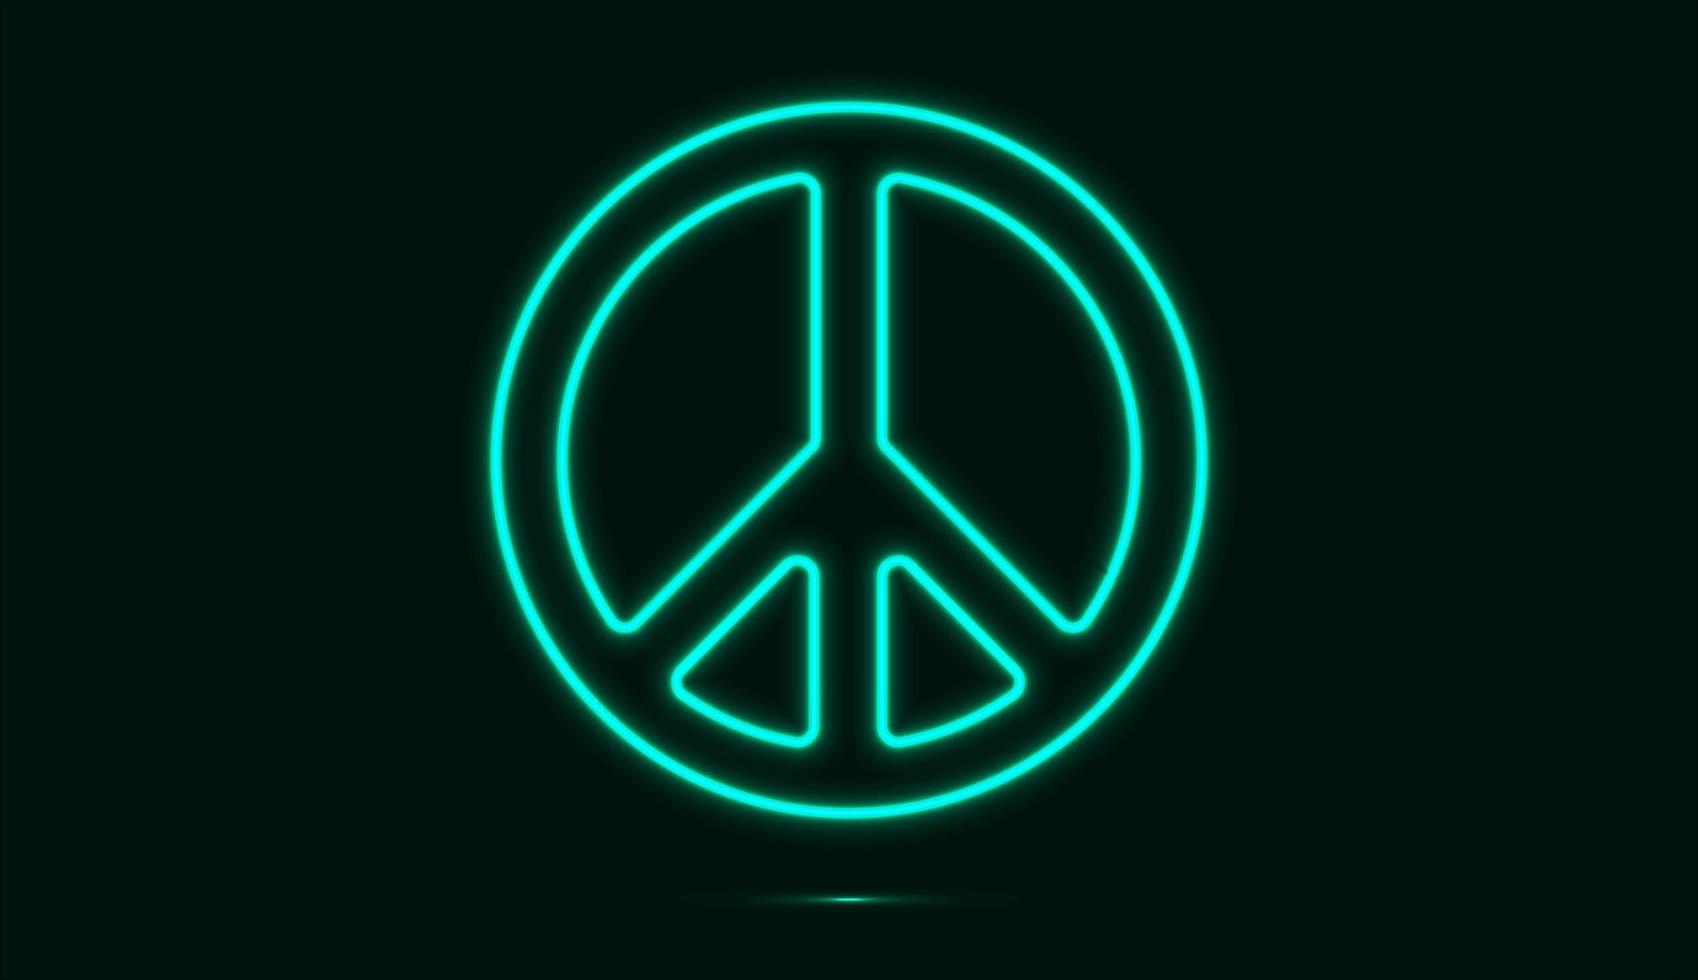 vredessymbool in heldere blauwe neonkleur geïsoleerd op een donkere achtergrond. vector illustratie